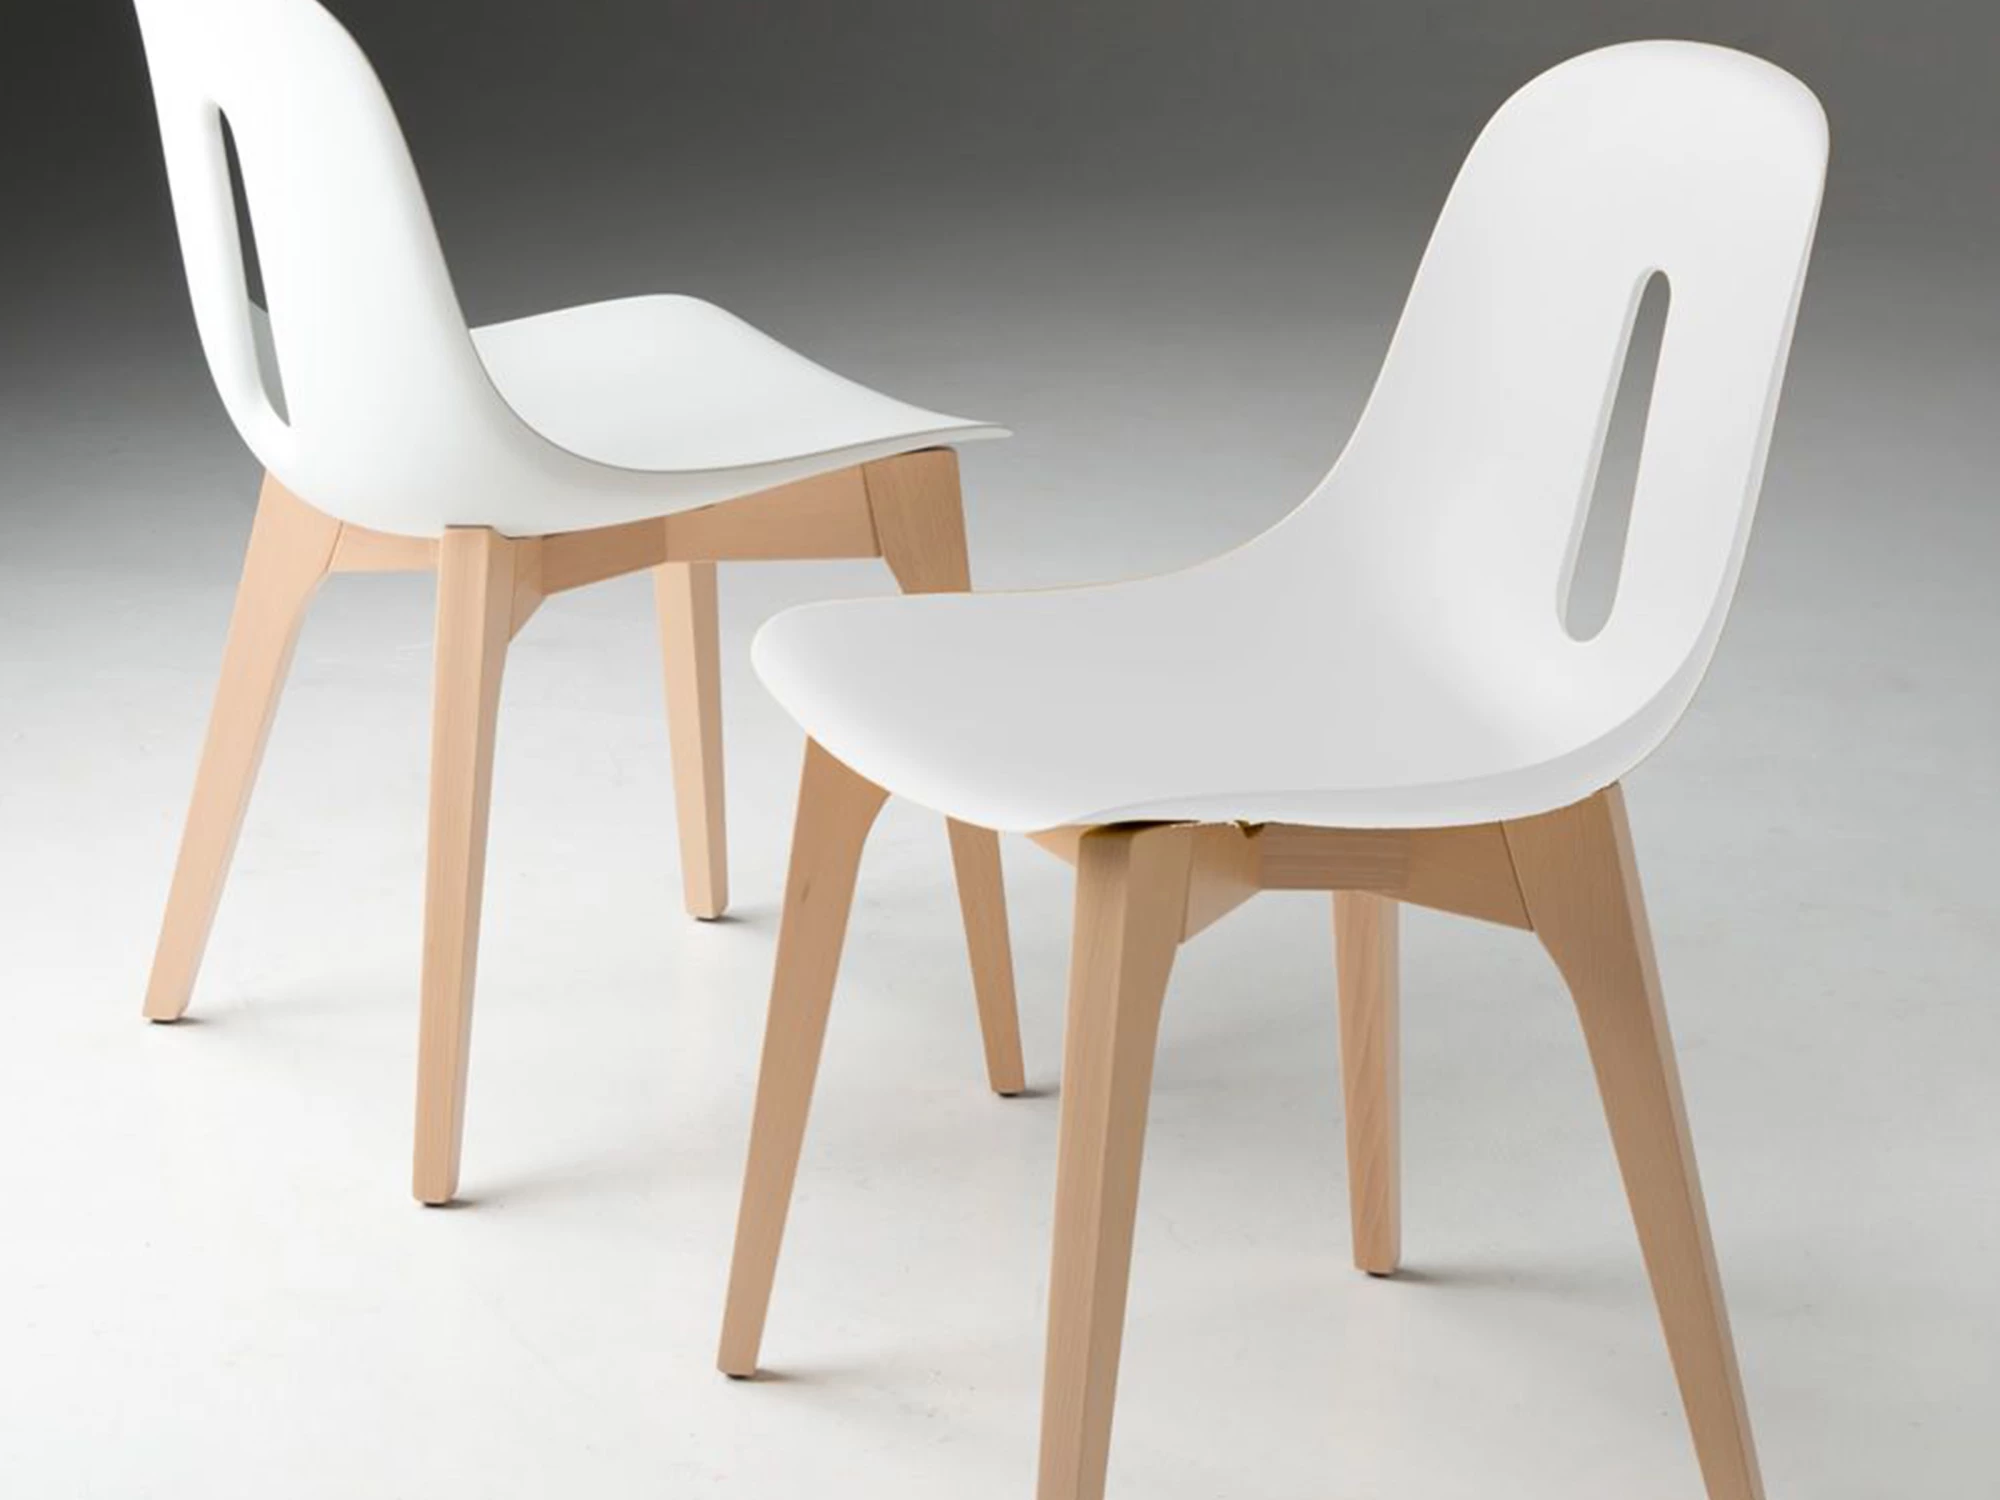 Chaise design GOTHAM-W, assise coque plastique couleur, piétement bois  vernis ou peint.